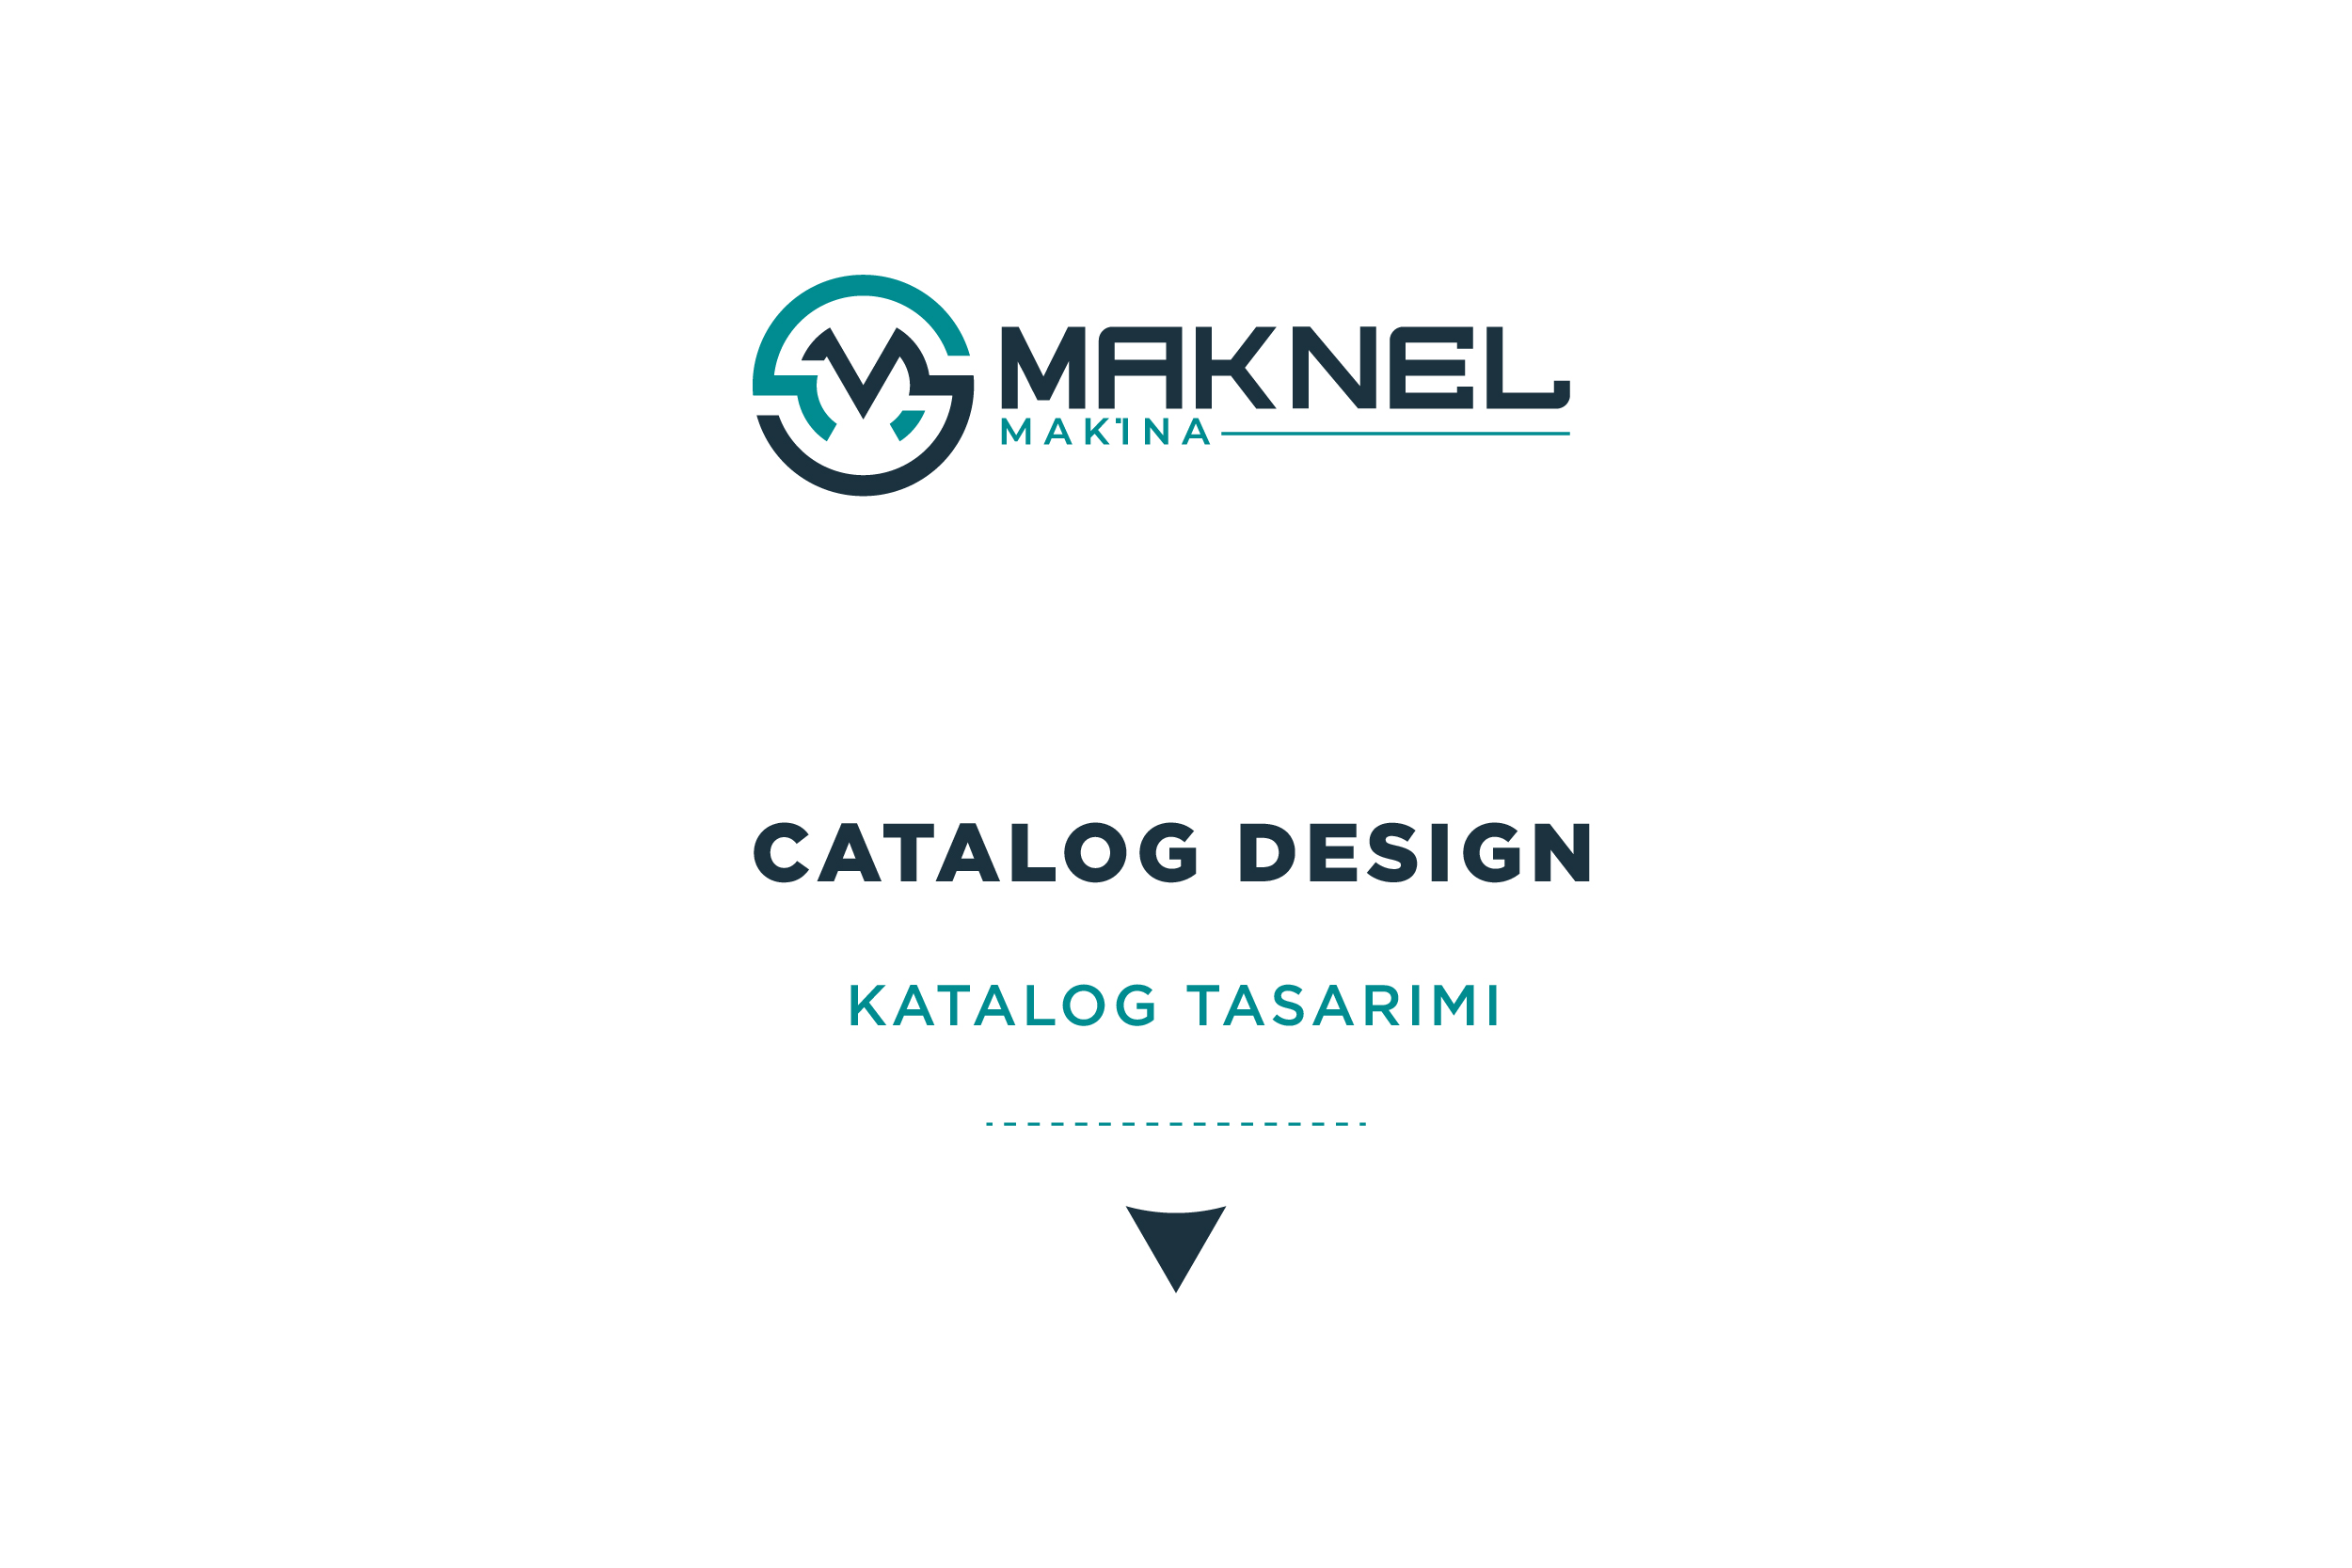 Maknel Makine - Catalog Design